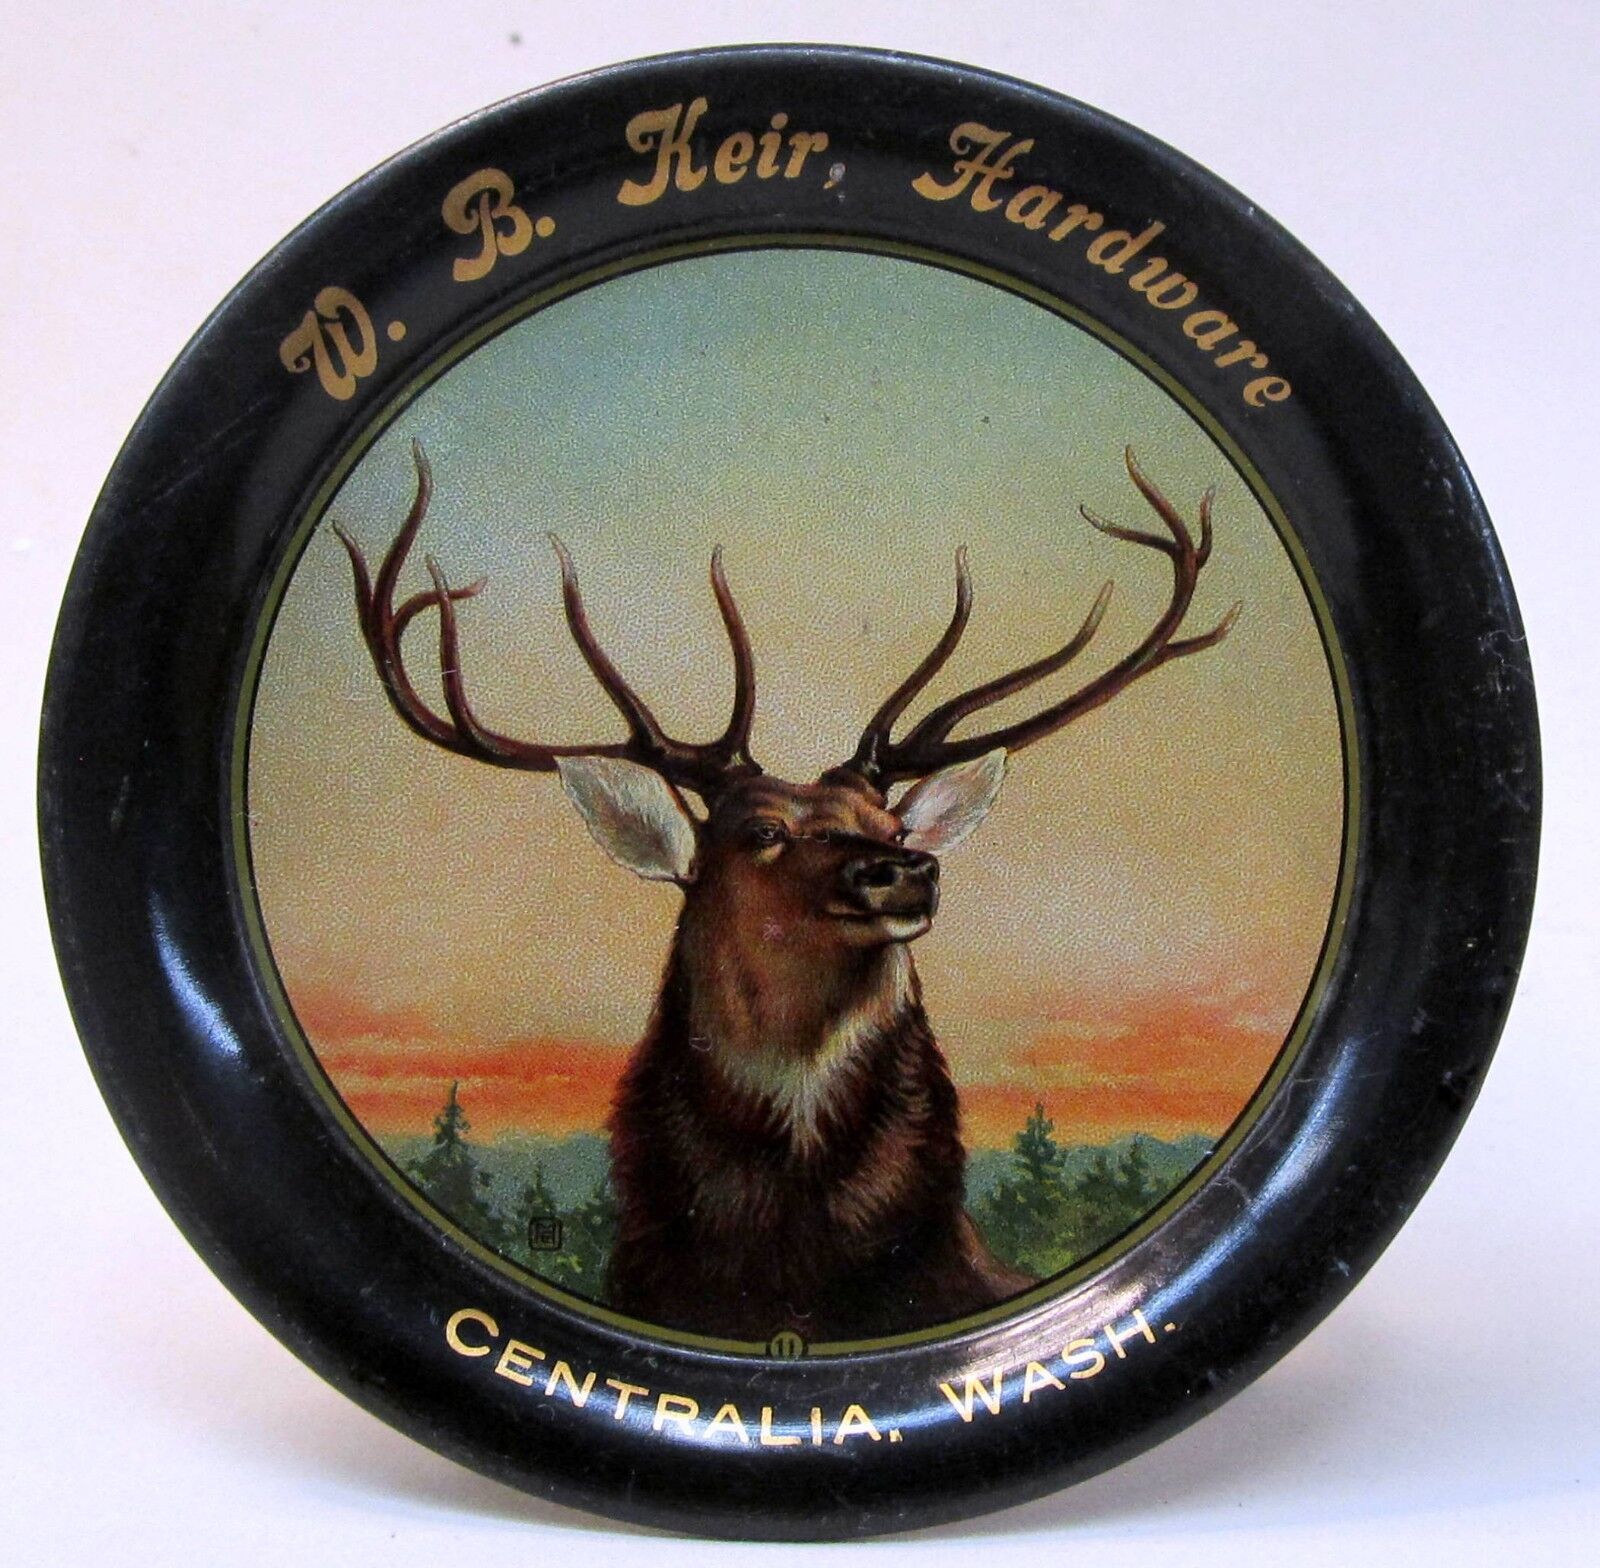 elk c. 1910 W.B. KEIR HARDWARE Centralia Washington tin litho tip tray ashtray